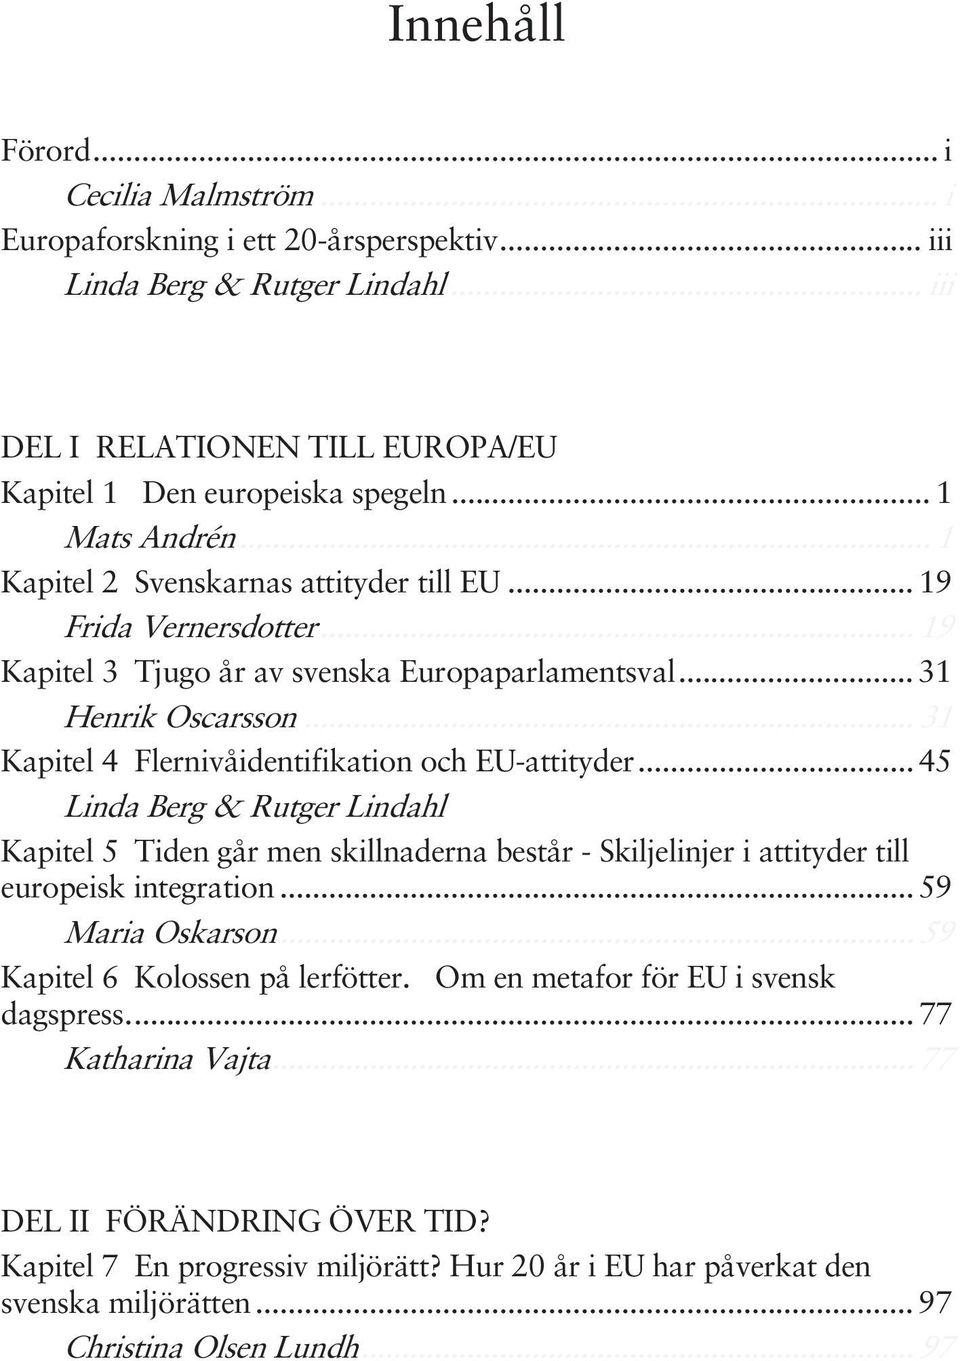 .. 31 Kapitel 4 Flernivåidentifikation och EU-attityder... 45 Linda Berg & Rutger Lindahl... 45 Kapitel 5 Tiden går men skillnaderna består - Skiljelinjer i attityder till europeisk integration.